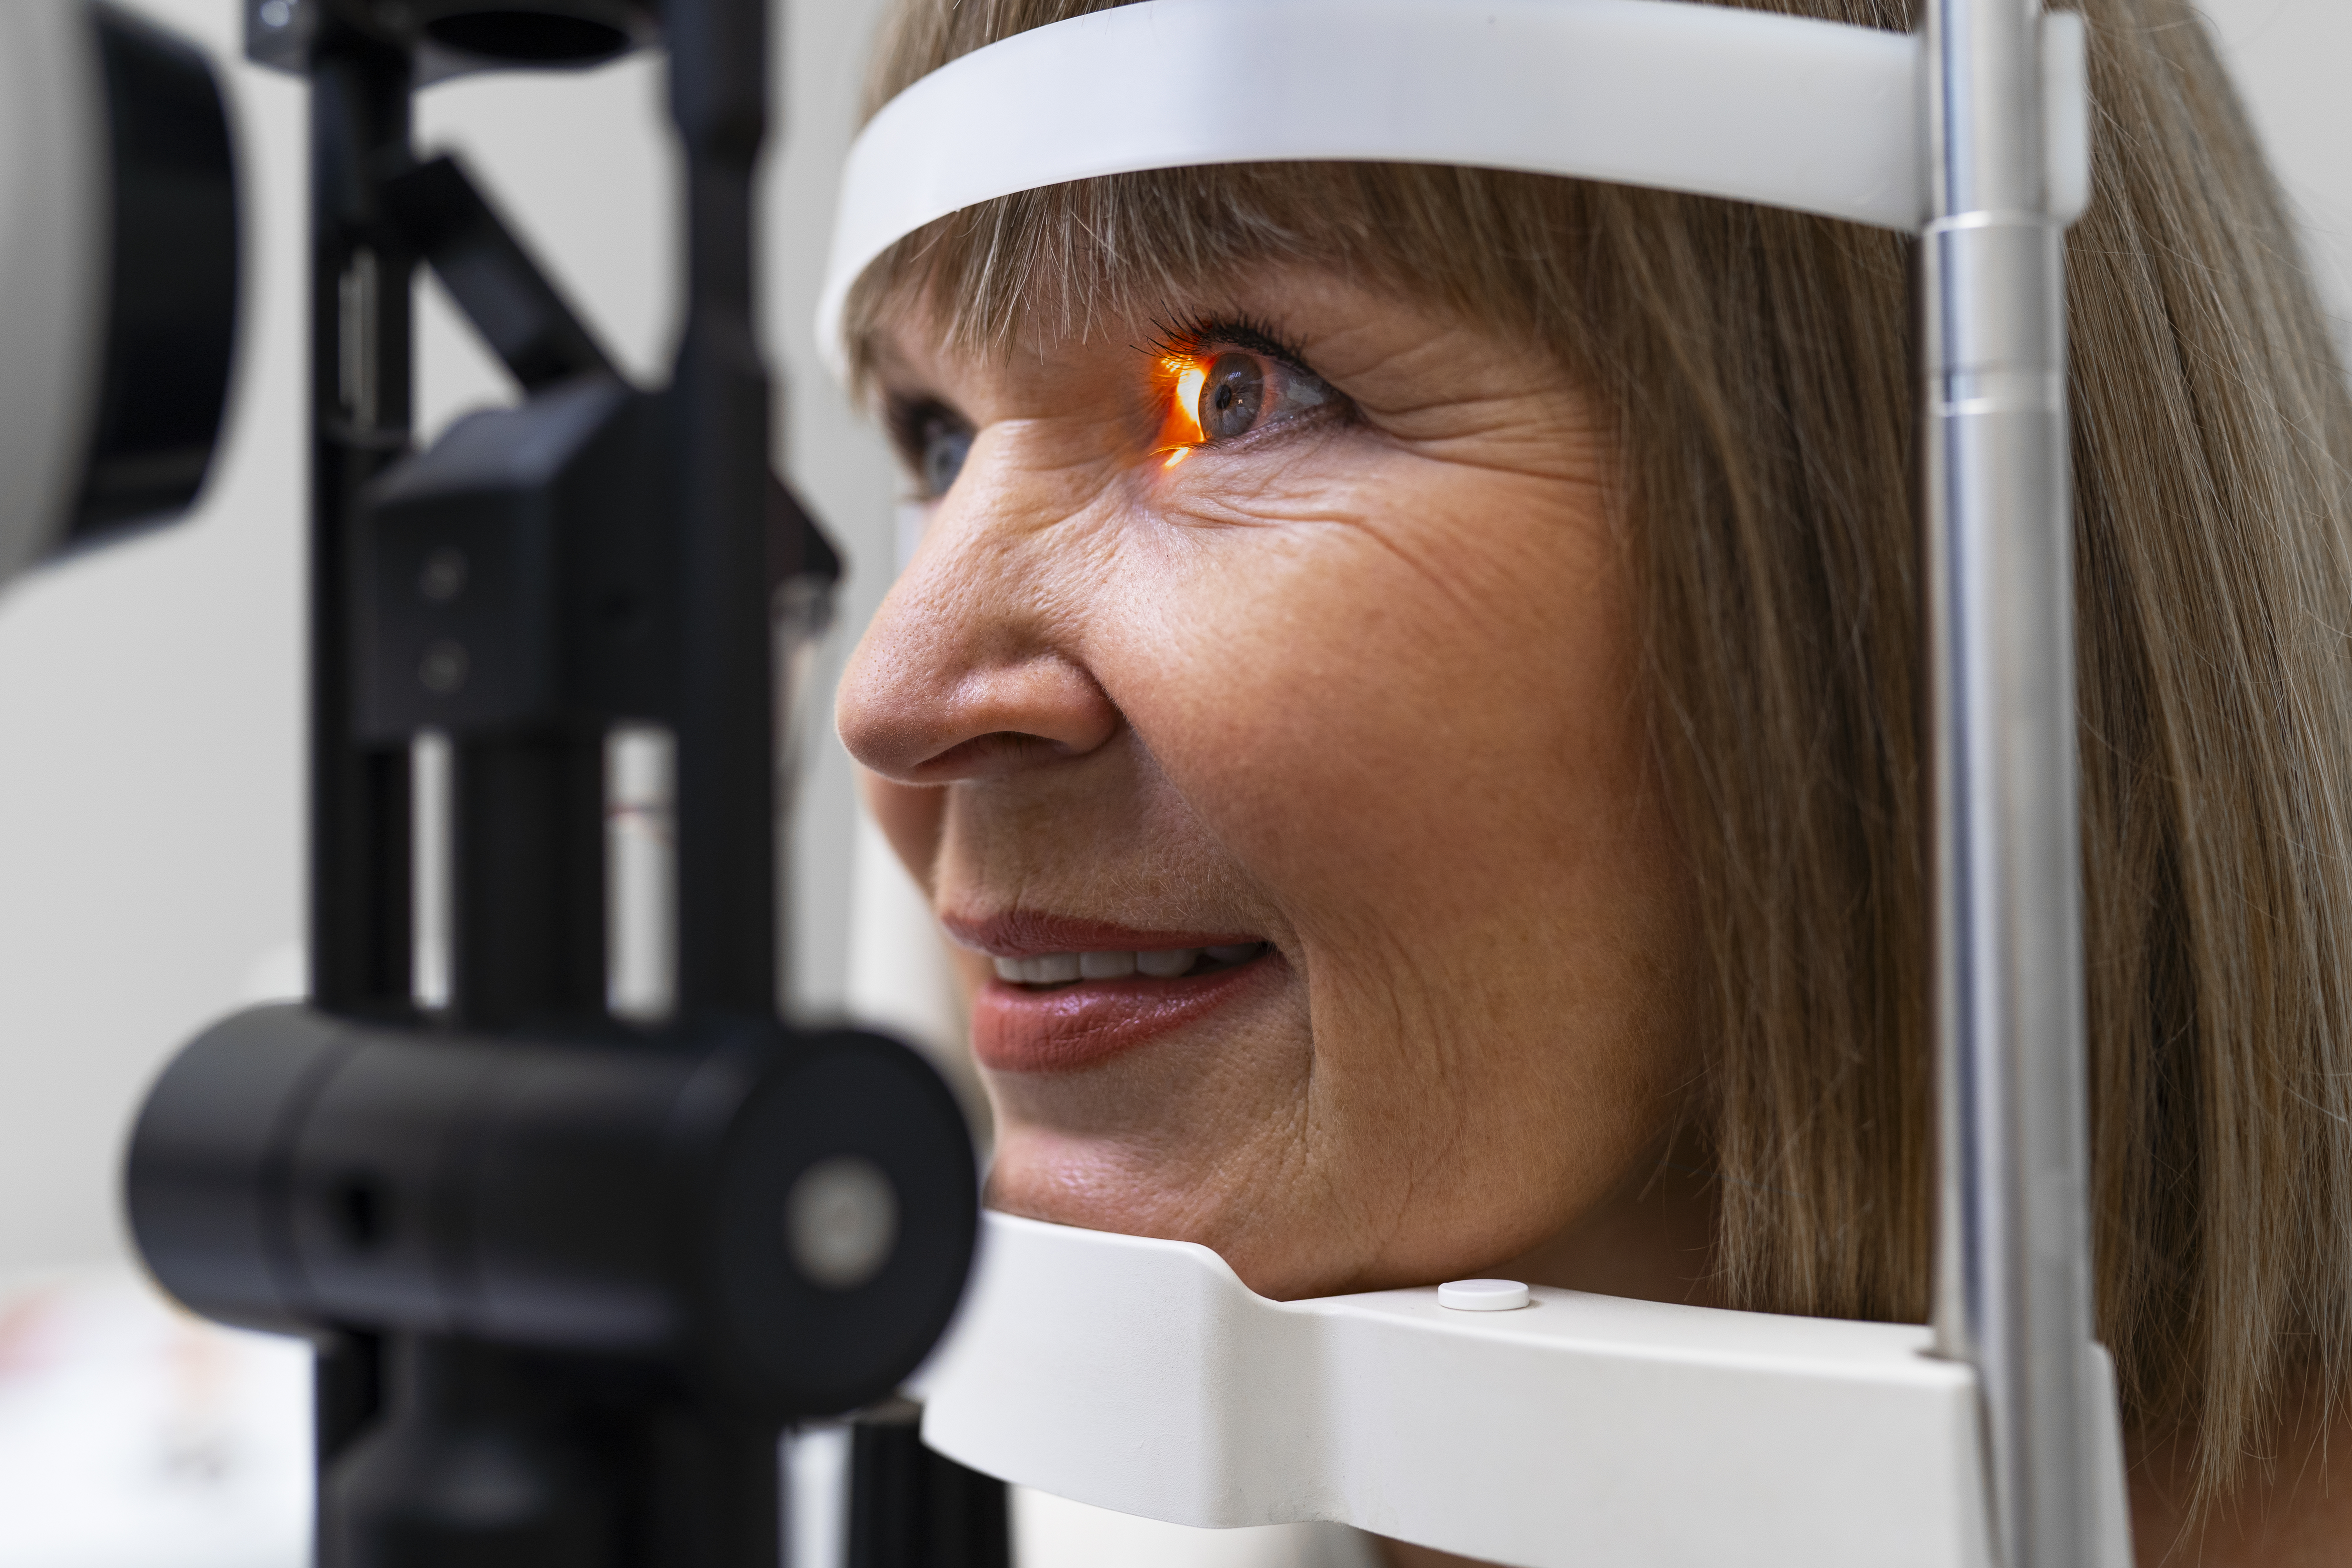 La rivoluzione laser per curare la cataratta Ottica Poliottica Optometristi Imperia Oneglia Shop Negozio Occhiali Vista Sole LentiaContatto Ipovisione